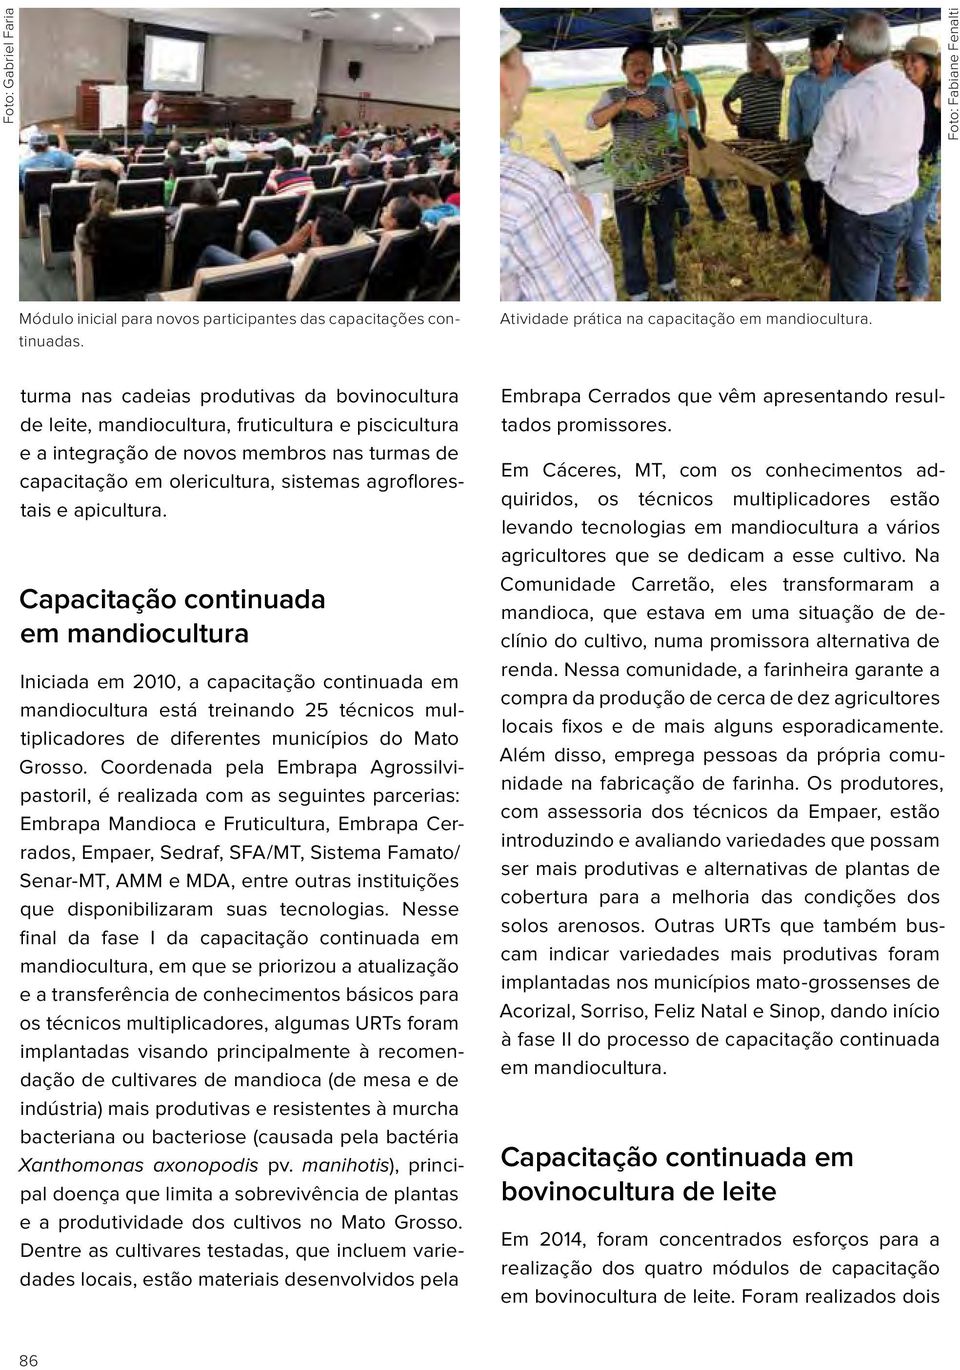 apicultura. Capacitação continuada em mandiocultura Iniciada em 2010, a capacitação continuada em mandiocultura está treinando 25 técnicos multiplicadores de diferentes municípios do Mato Grosso.